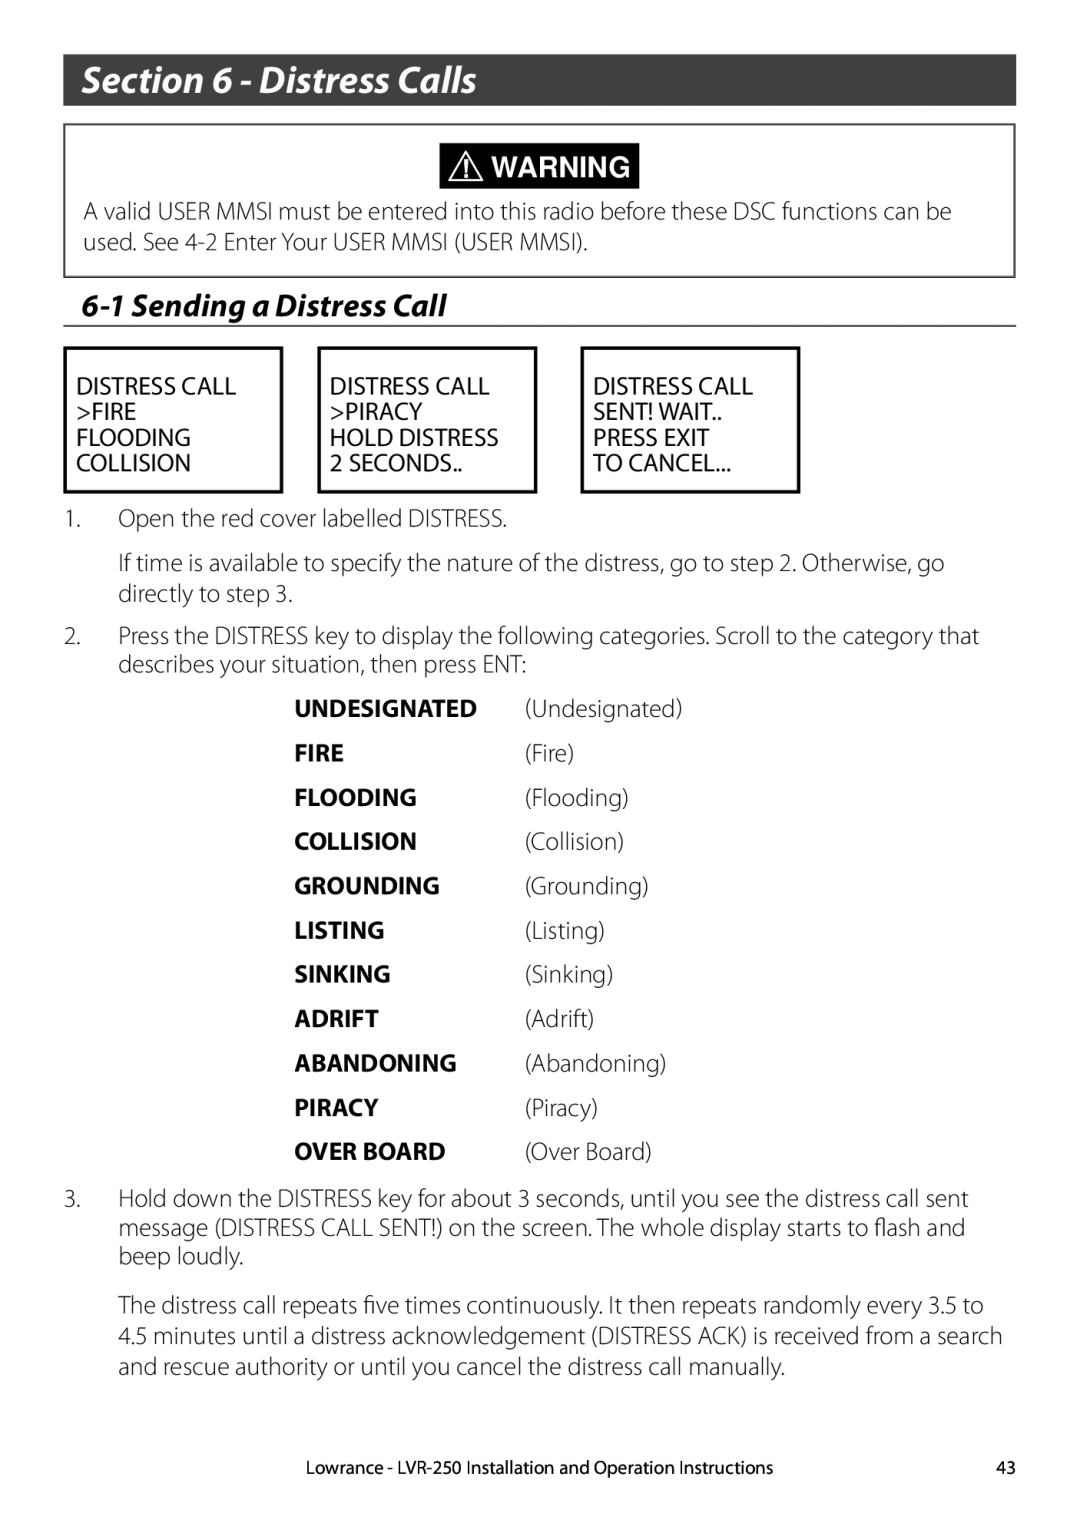 Lowrance electronic LVR-250 manual Distress Calls, 6-1Sending a Distress Call 